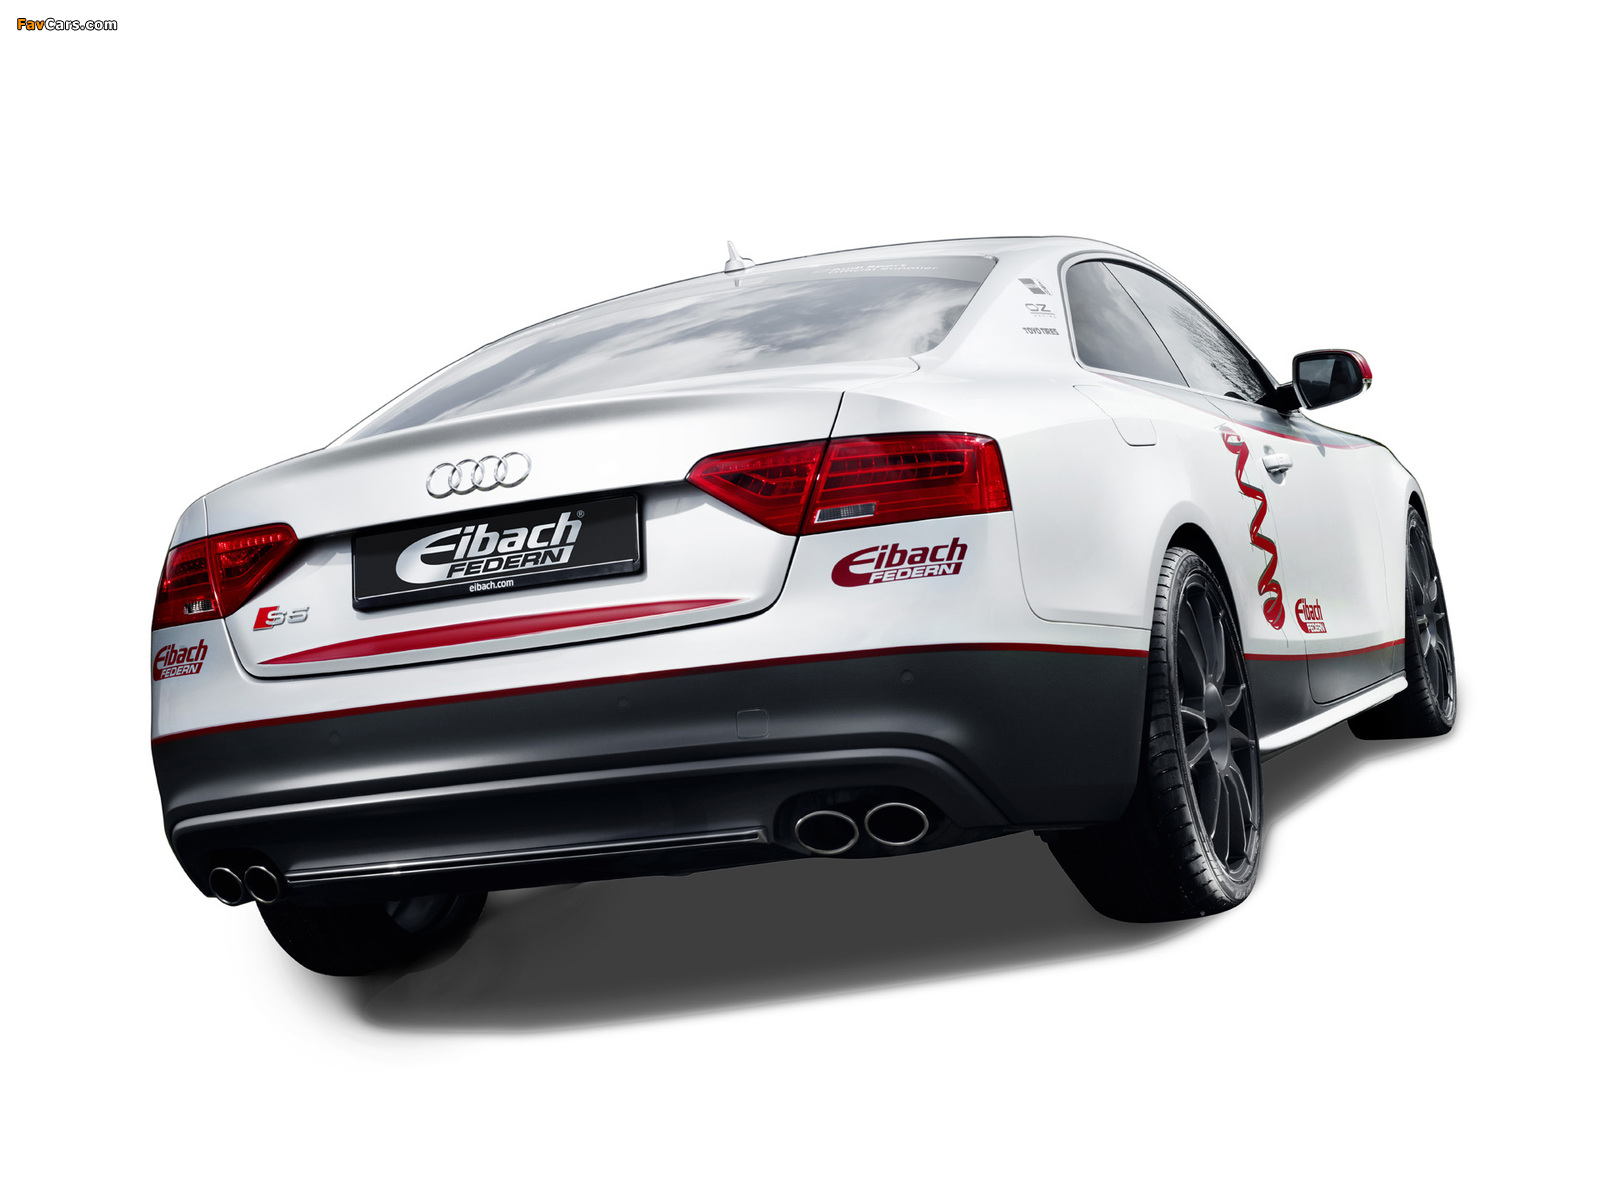 белый автомобиль Eibach Audi S5 Project Car бесплатно